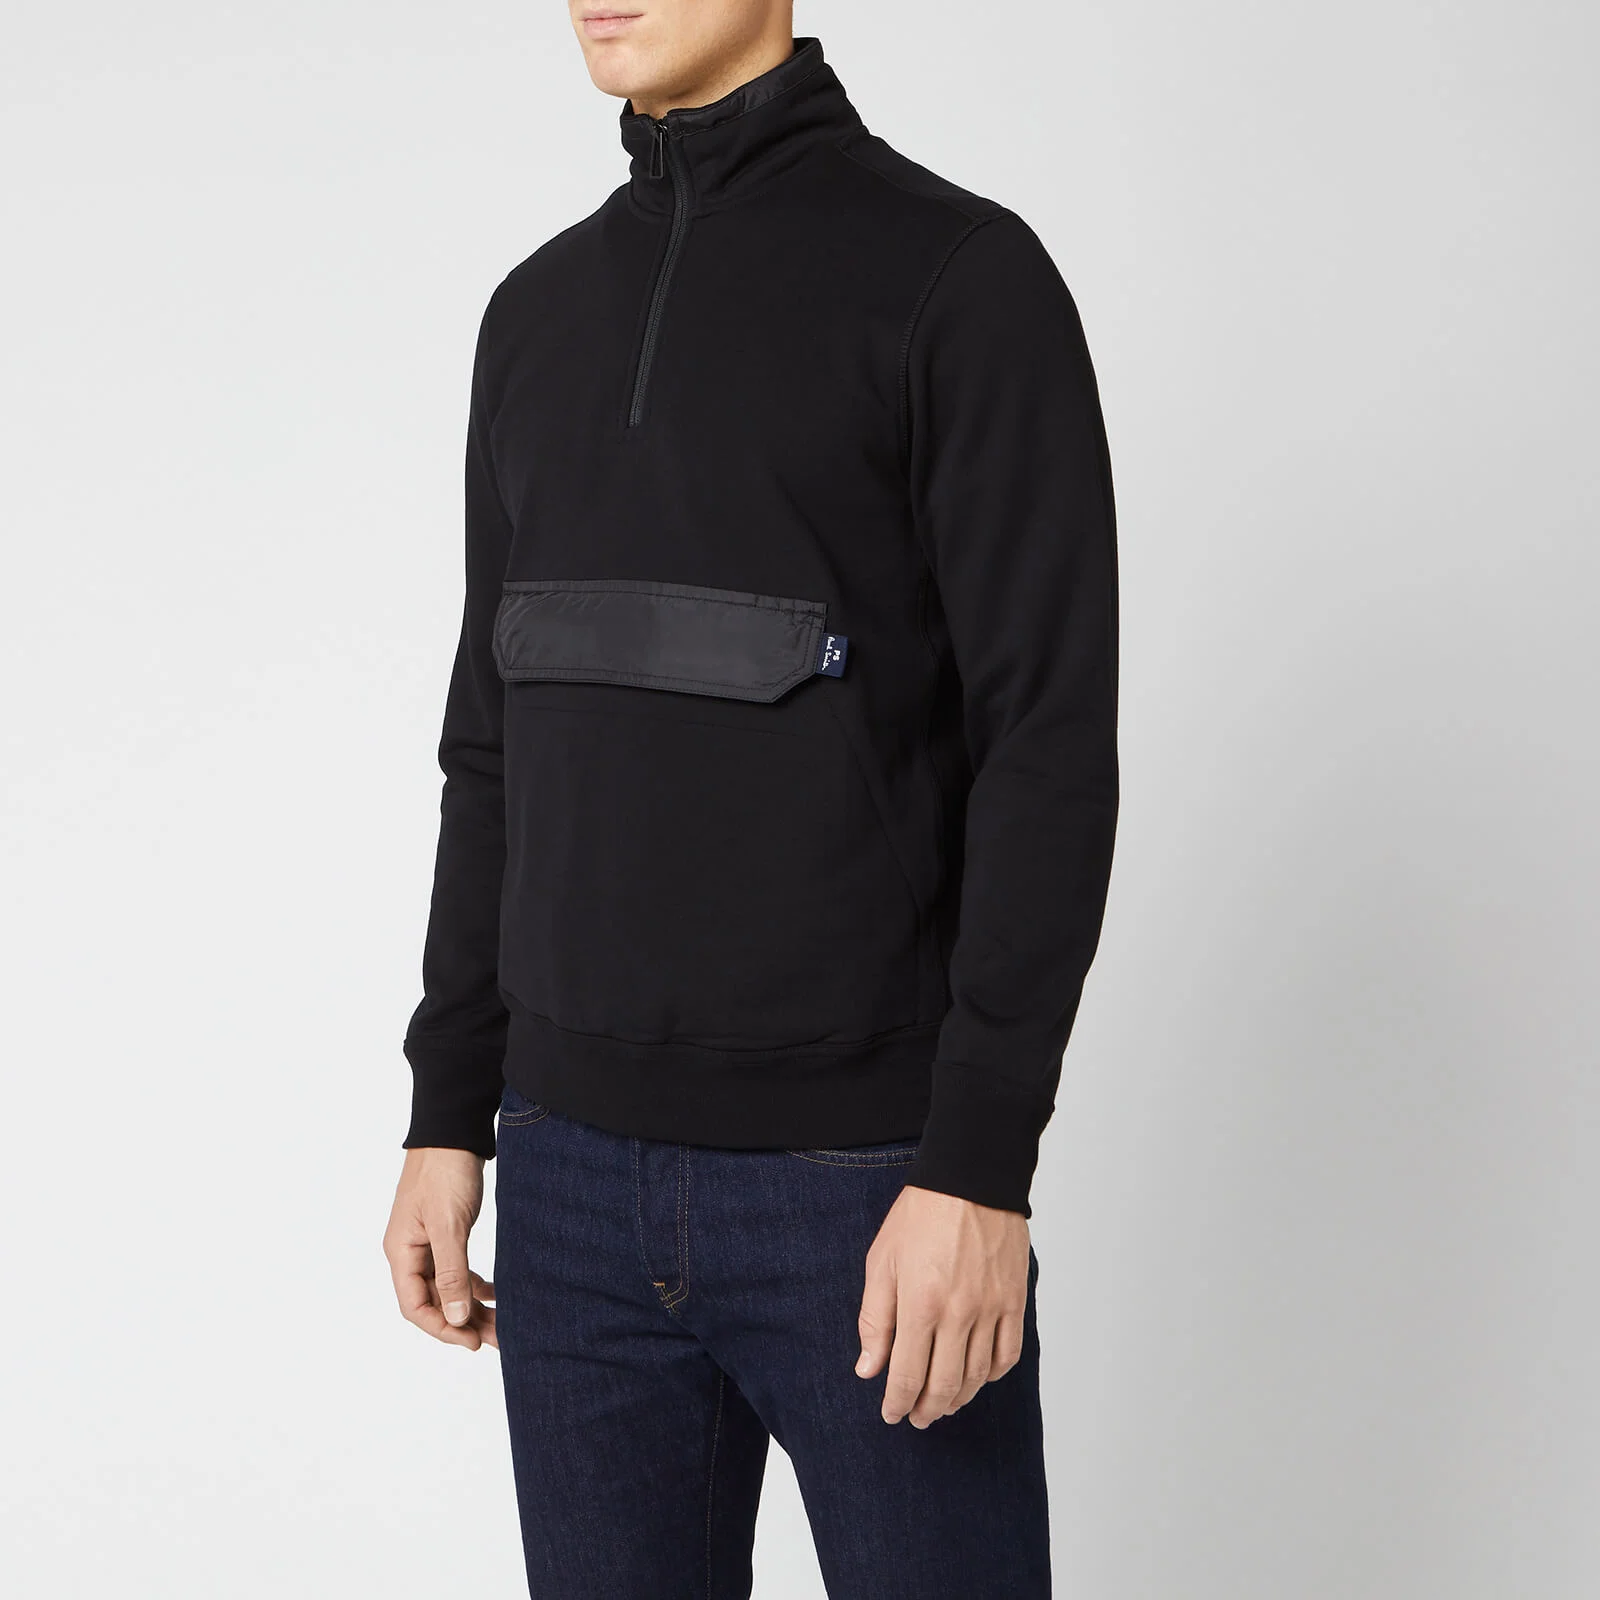 PS Paul Smith Men's Half Zip Pocket Sweatshirt - Black Image 1